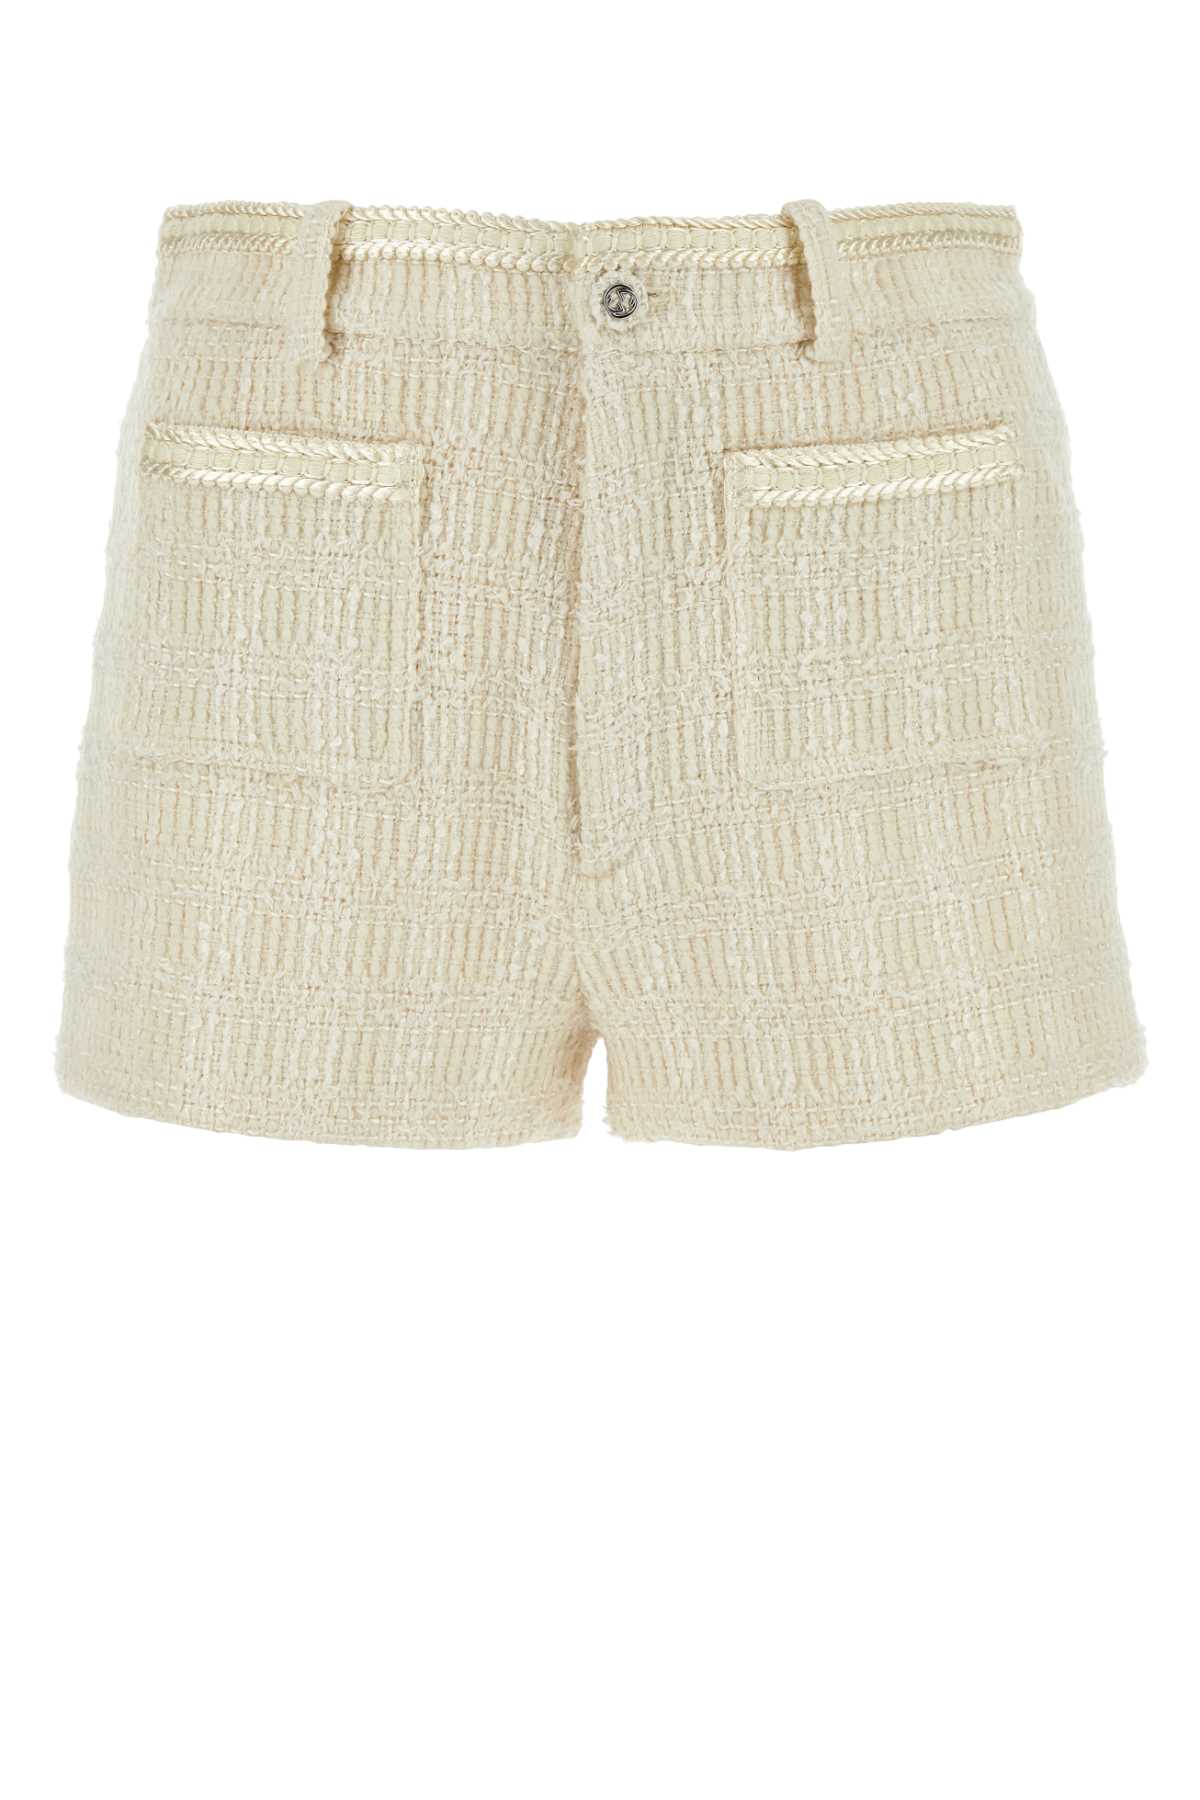 Ivory Tweed Shorts